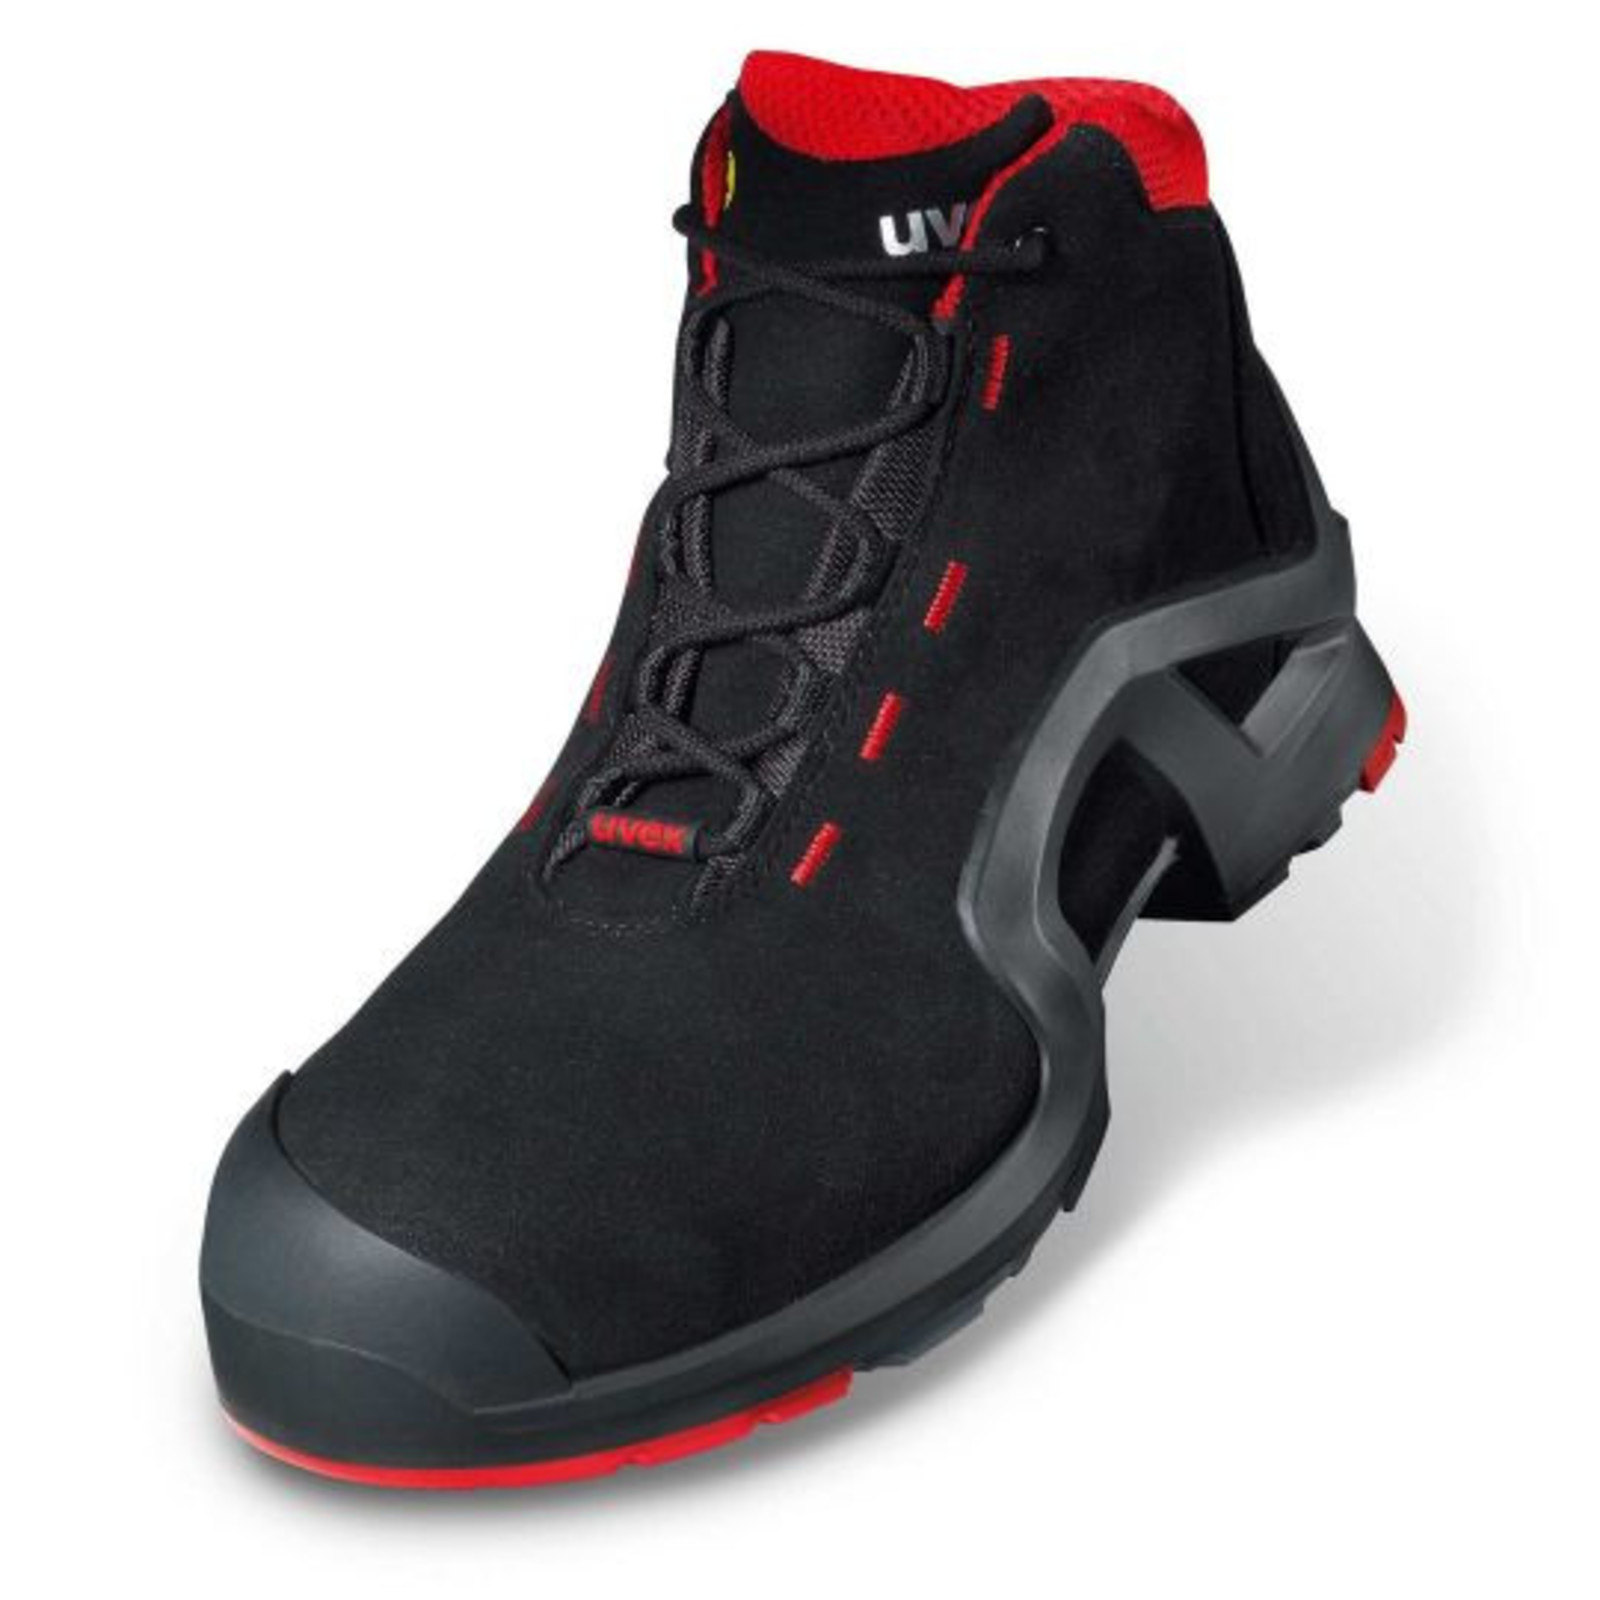 Vysoká bezpečnostná obuv Uvex 1 x-tended support S3 85172 - veľkosť: 44, farba: čierna/červená